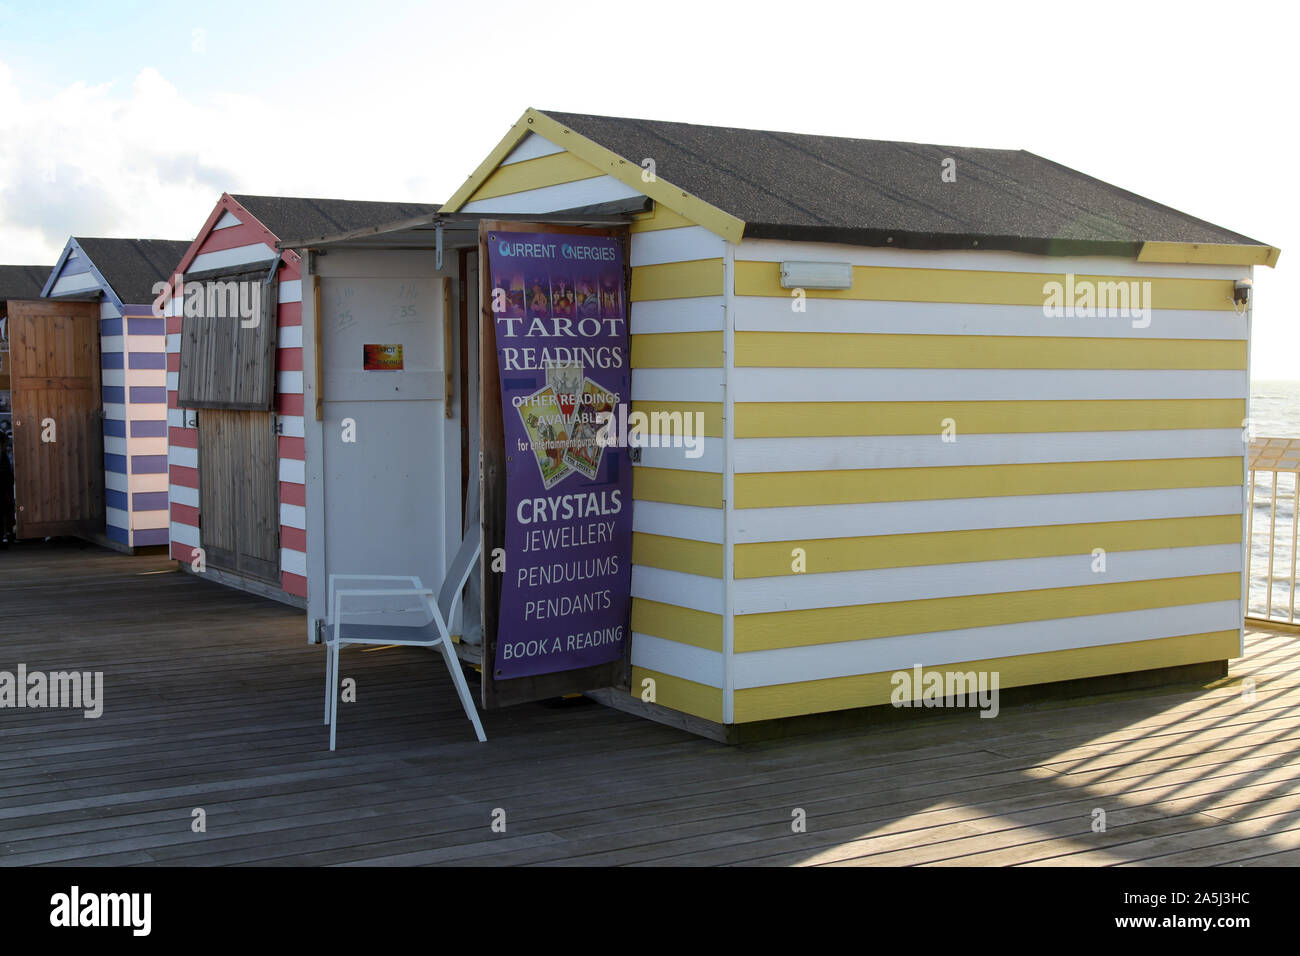 Cabaña de playa Clairvoyant en Hastings Pier que ofrece lectura de tarot tarjeta y lecturas de bola de cristal, Hastings, Inglaterra, Reino Unido, día, 2019 Foto de stock